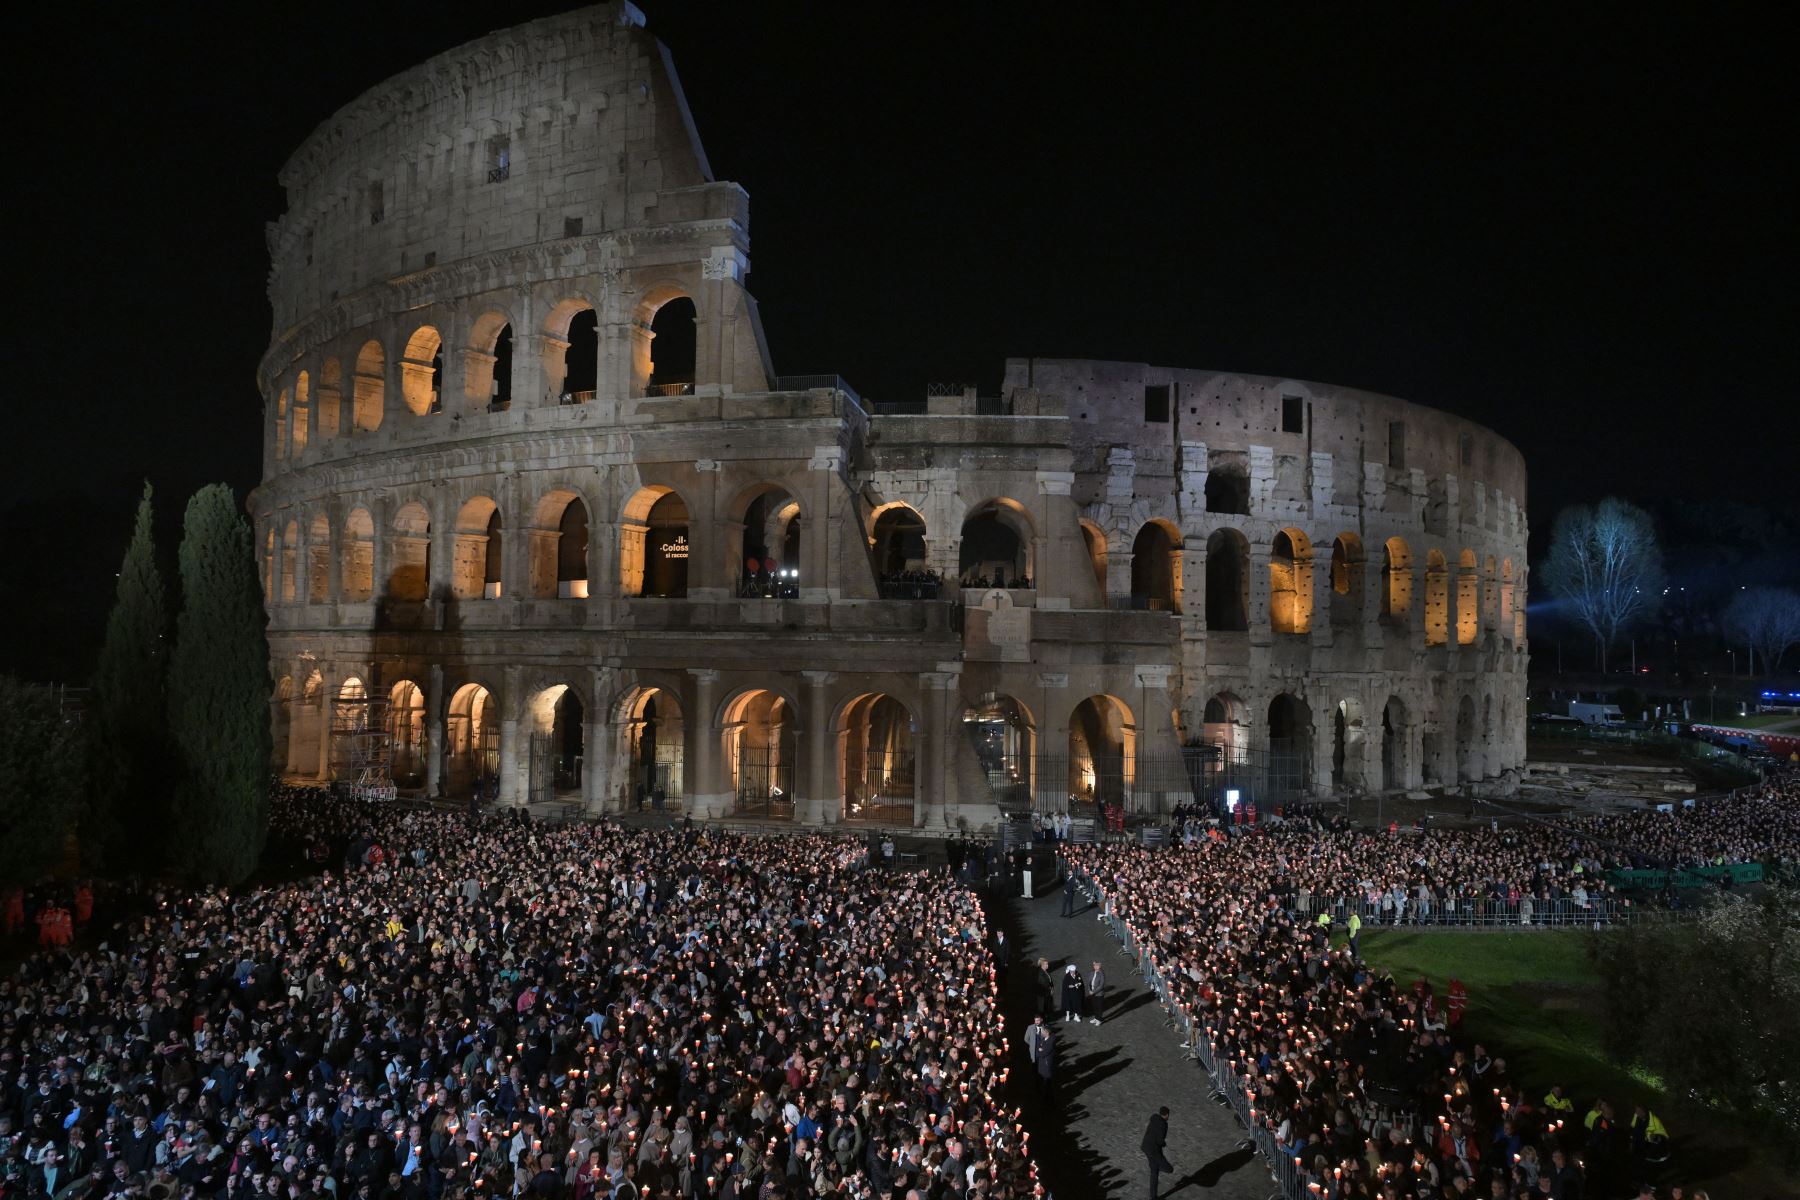 Una vista general muestra a personas reunidas en el Coliseo antes del Vía Crucis presidido por el Papa Francisco como parte de las celebraciones de Semana Santa en Roma.
Foto: AFP